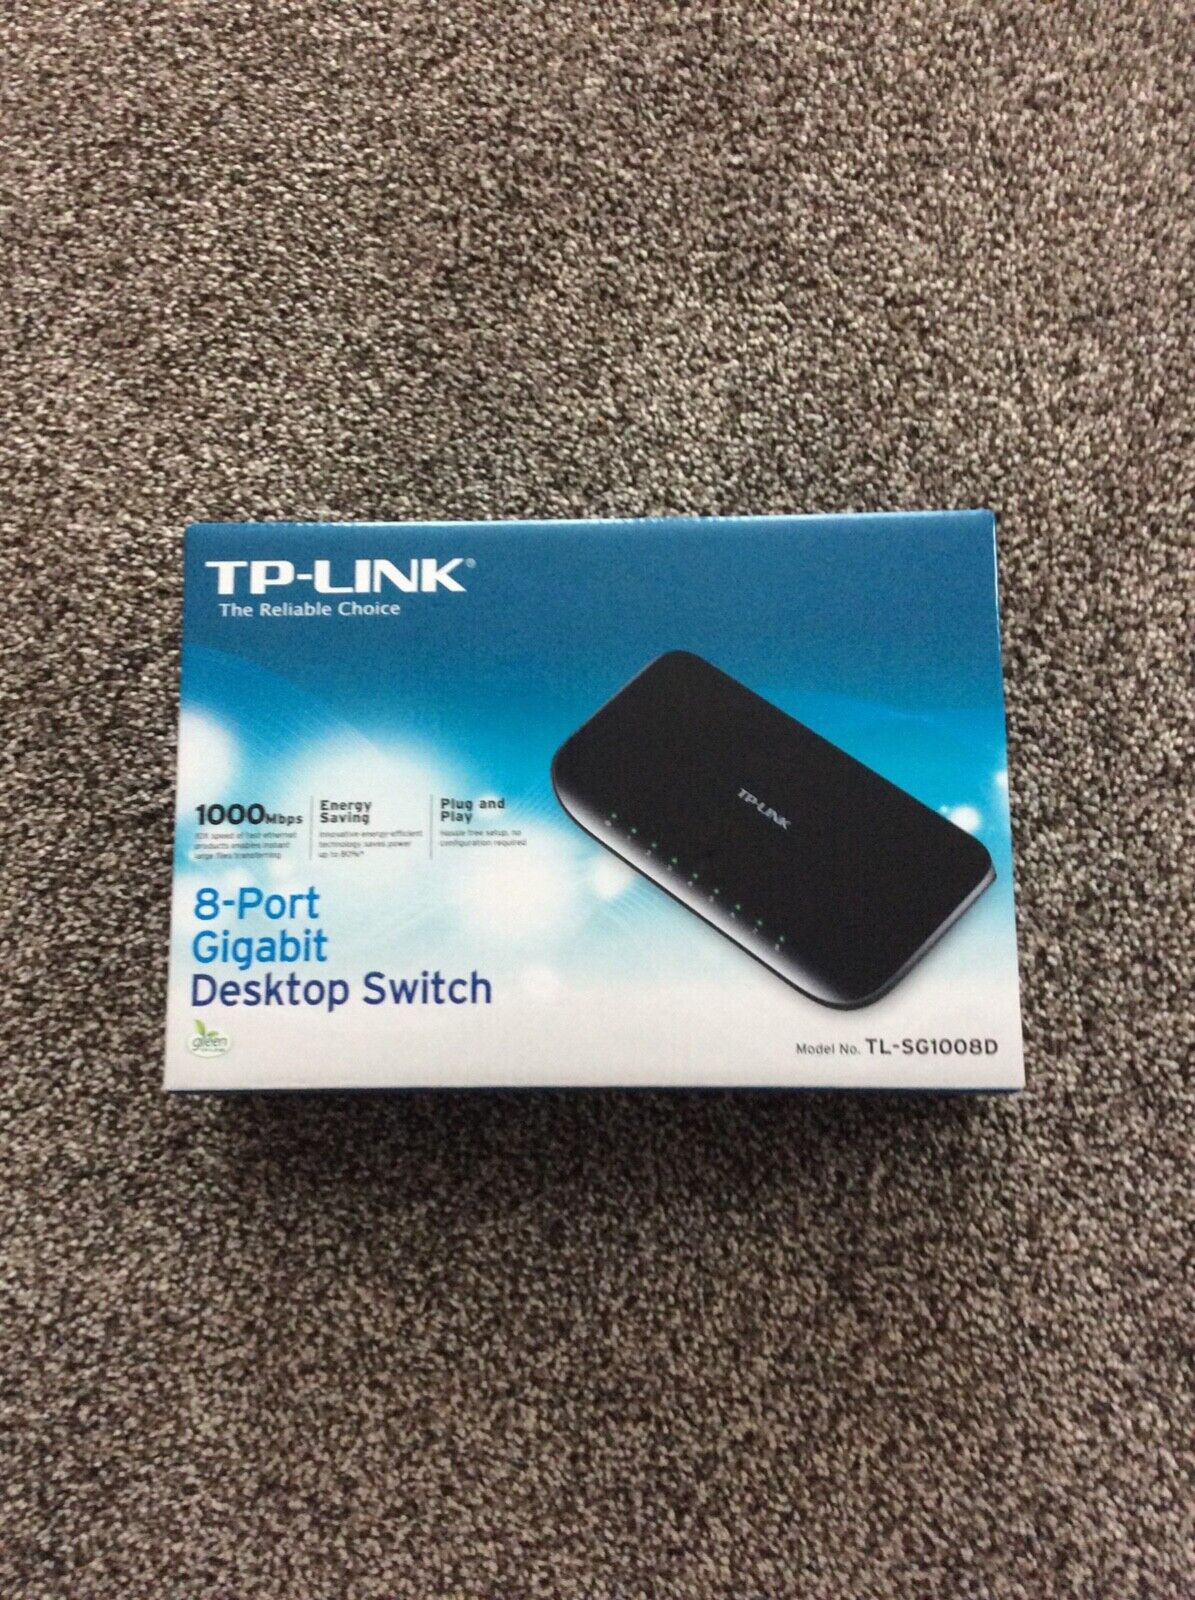 TP-LINK 1000Mbps 8-Port Gigabit Desktop Switch - new, never-used